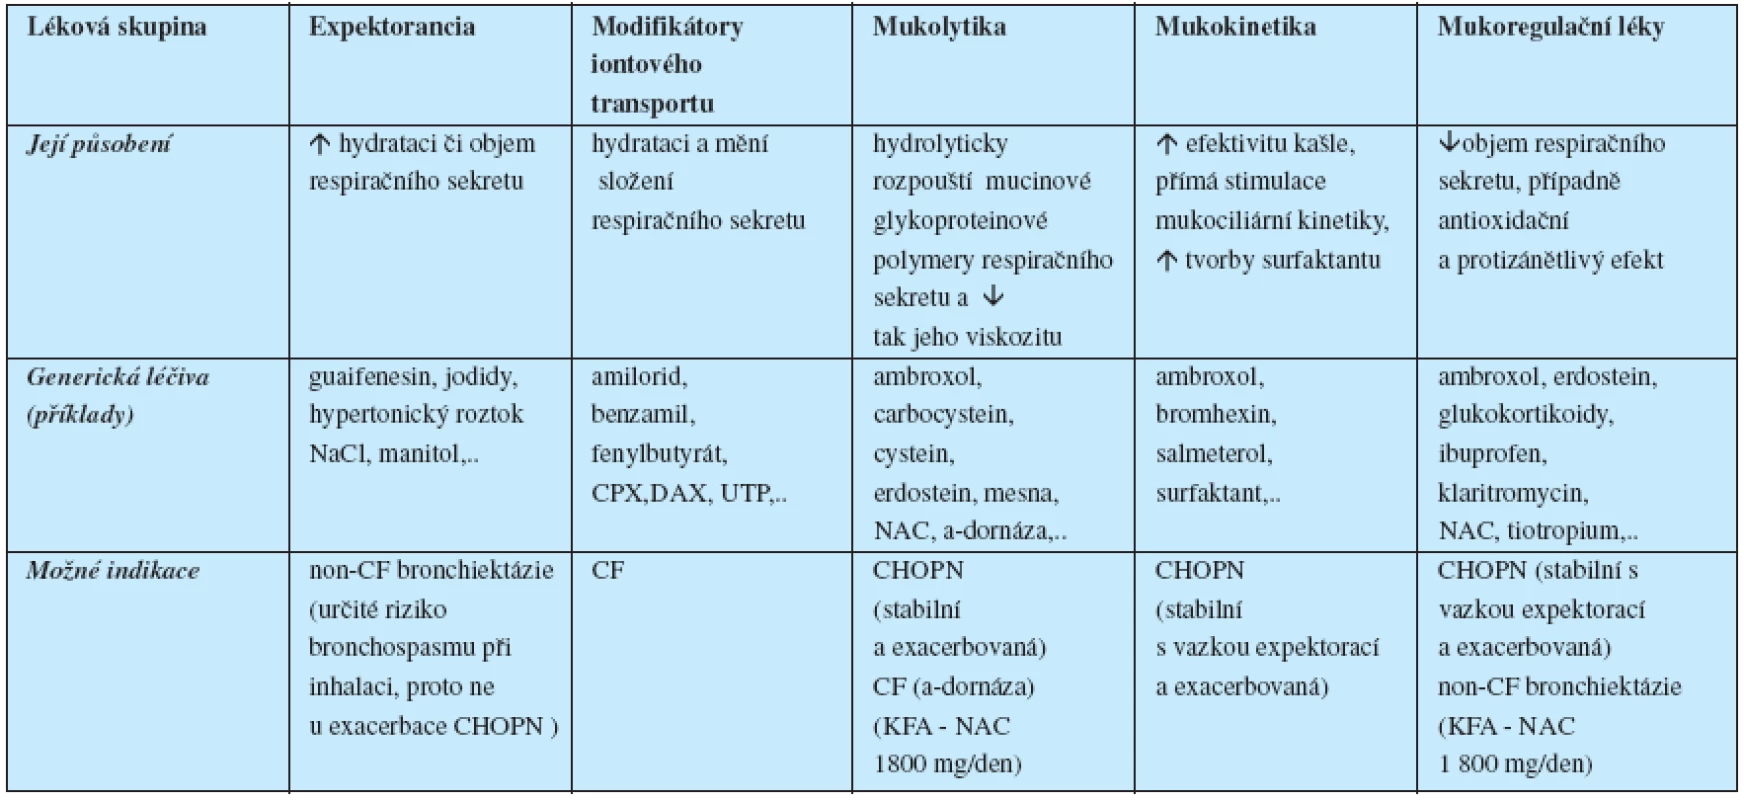 Mukoaktivní léky (základní rozdělení dle Rubina 2007, Koblížka 2007 a Janssense 2009)